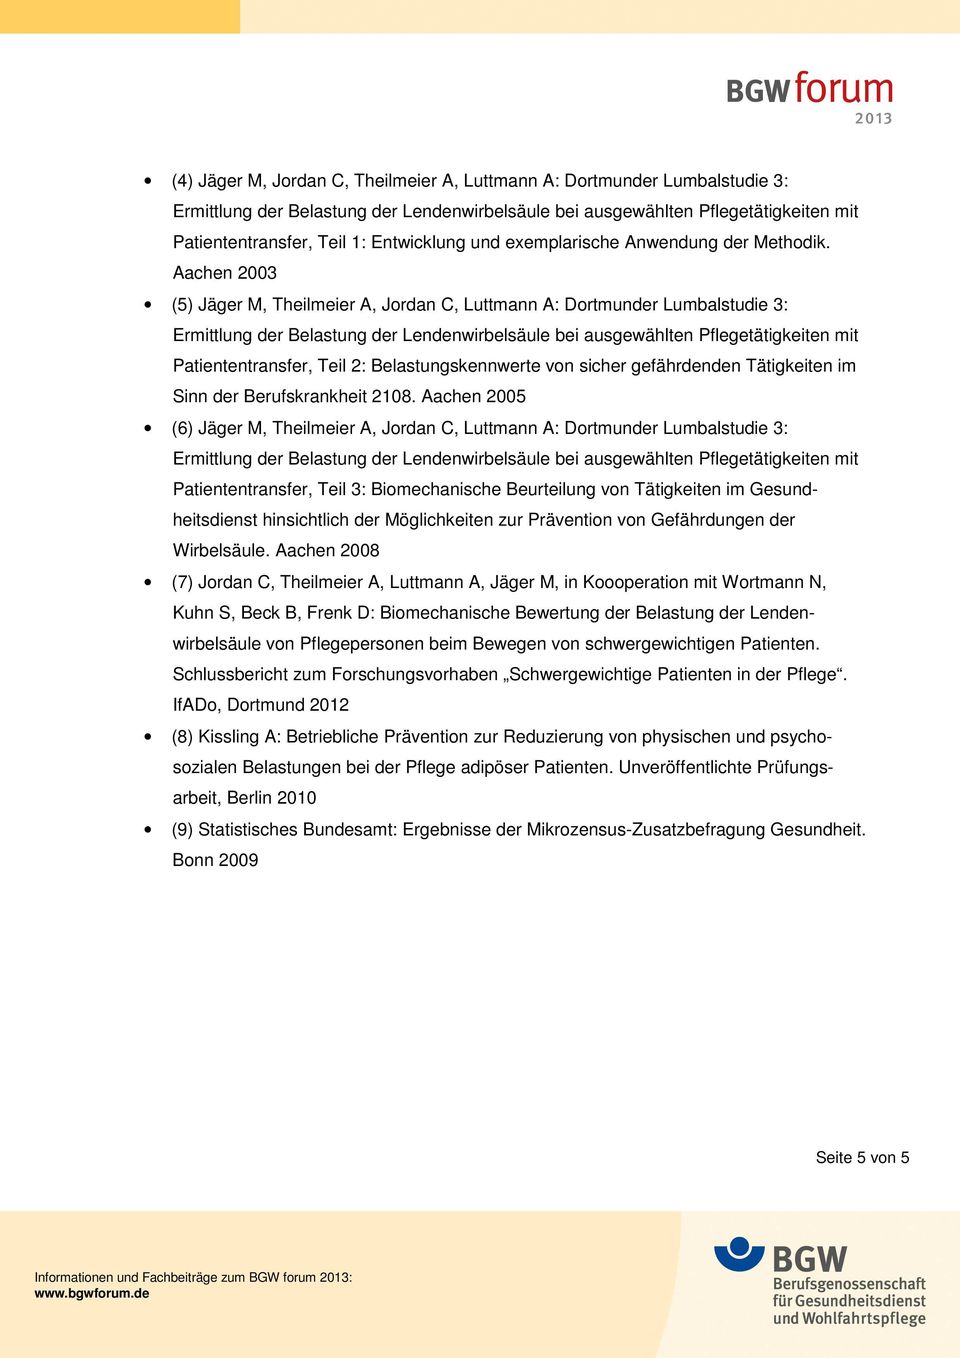 2108. Aachen 2005 (6) Jäger M, Theilmeier A, Jordan C, Luttmann A: Dortmunder Lumbalstudie 3: Patiententransfer, Teil 3: Biomechanische Beurteilung von Tätigkeiten im Gesundheitsdienst hinsichtlich